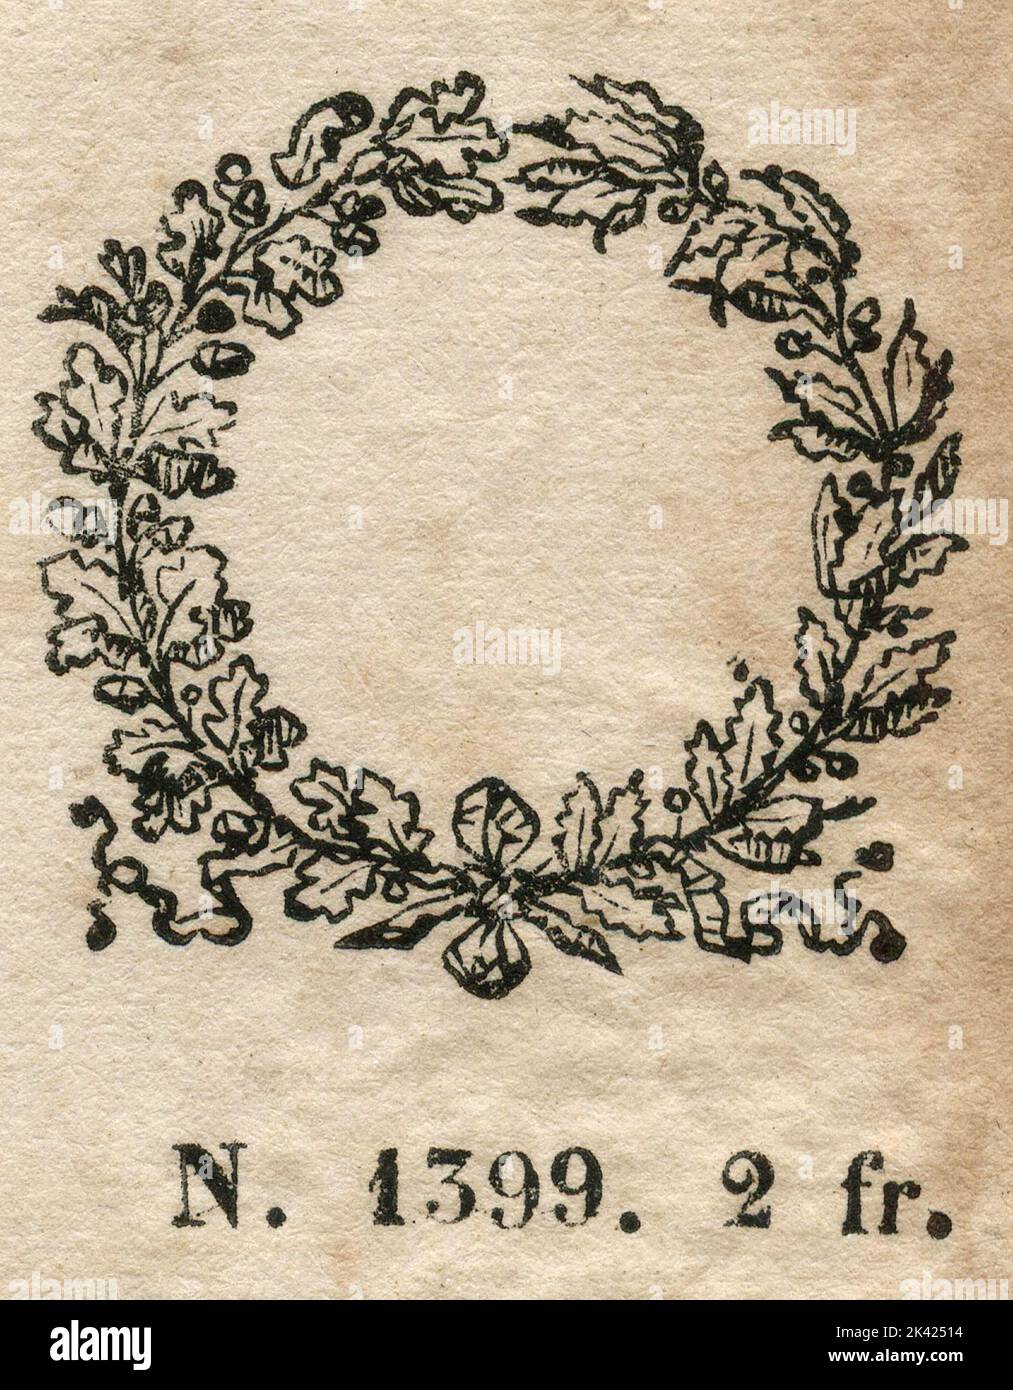 Ilustración de la antigua estampilla francesa 2 fr., 1800 ca. Foto de stock